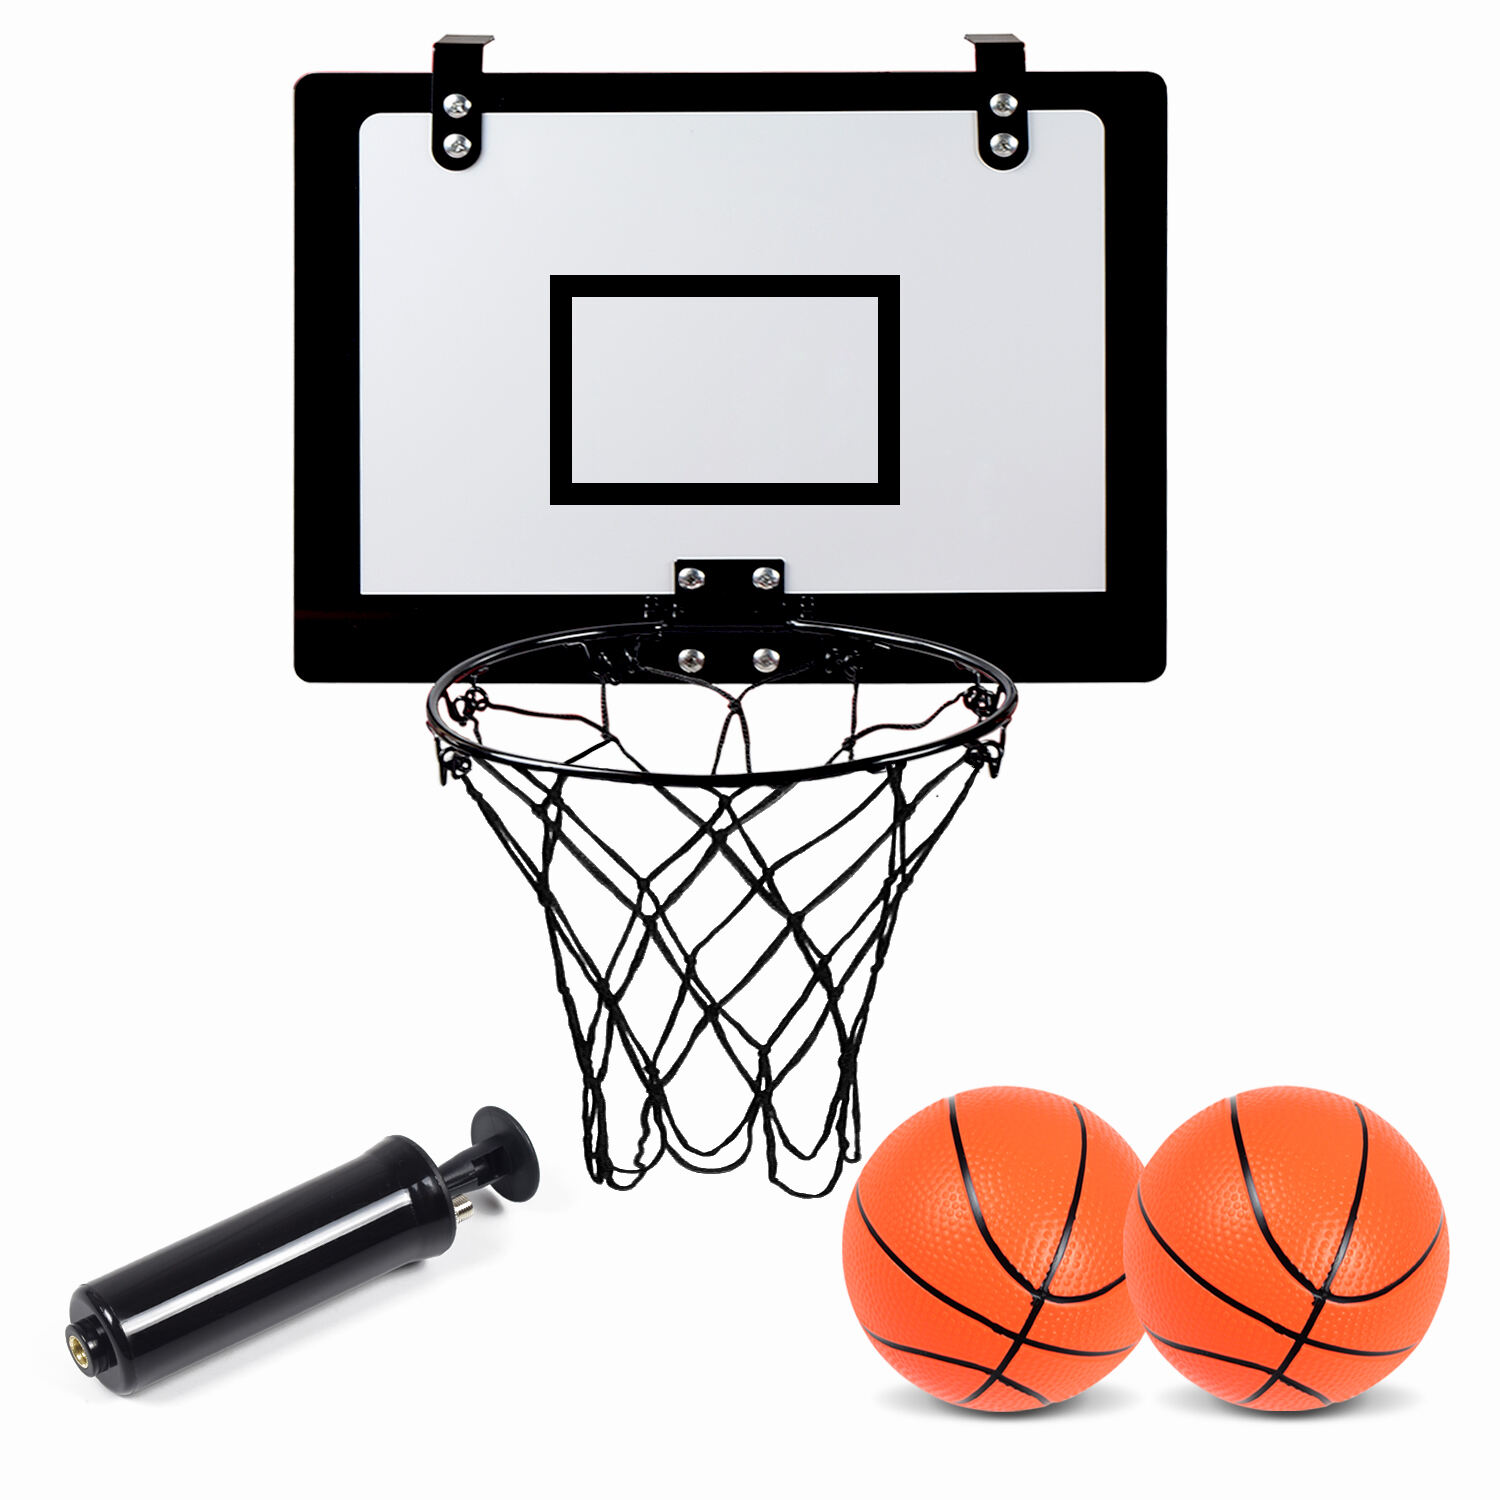 カスタムロゴ壁掛け式屋内子供用バスケットボール練習用おもちゃ折りたたみ式バスケットボールフープボードリング付き製造